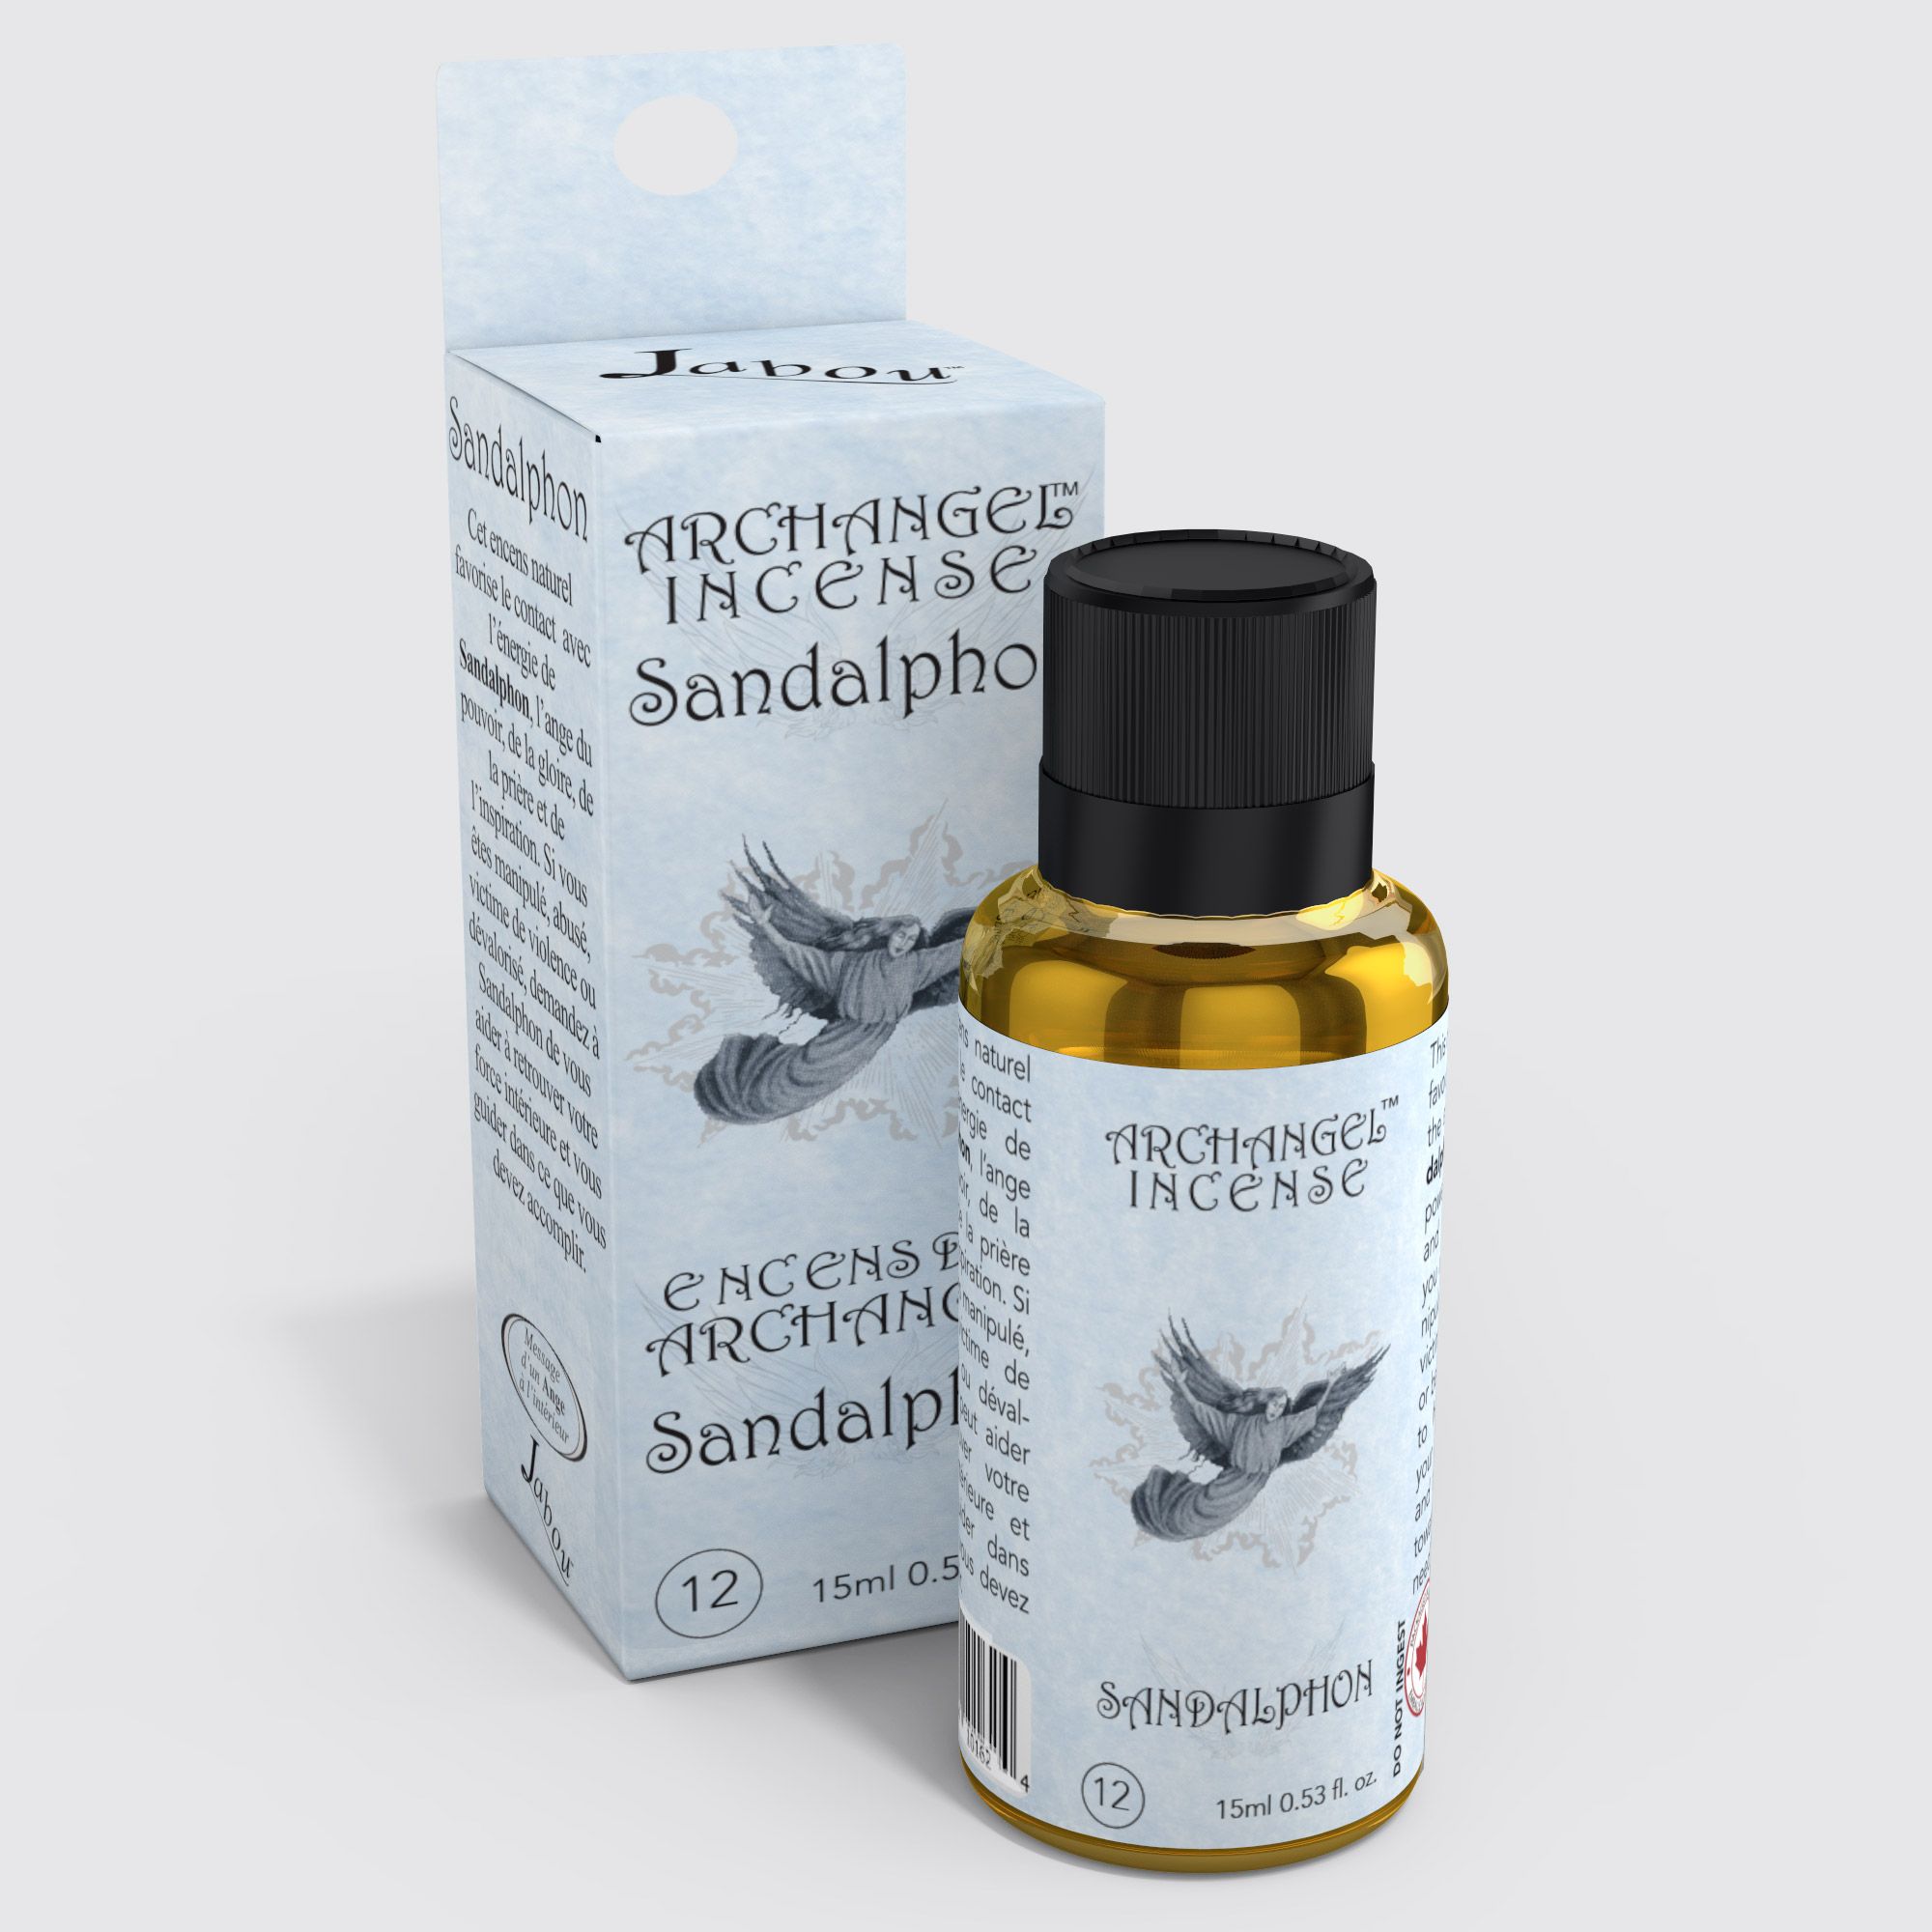 Jabou™ Archangel Incense™ #12 Sandalphon (Accomplishment) Oil